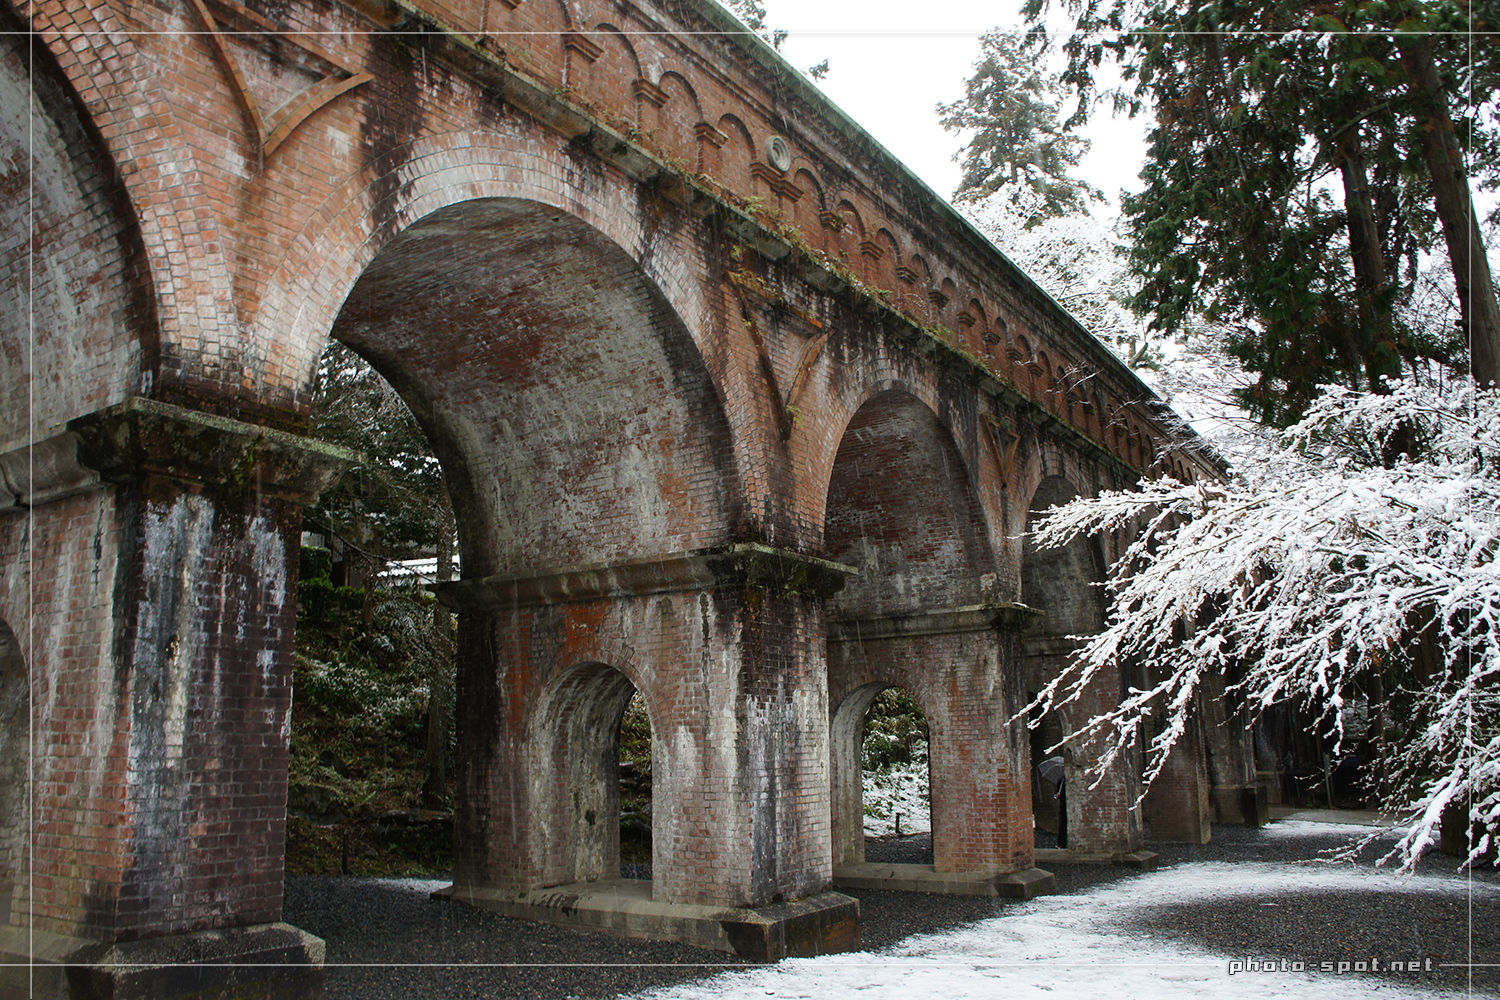 レンガで造られたアーチ橋の水路閣も雪化粧